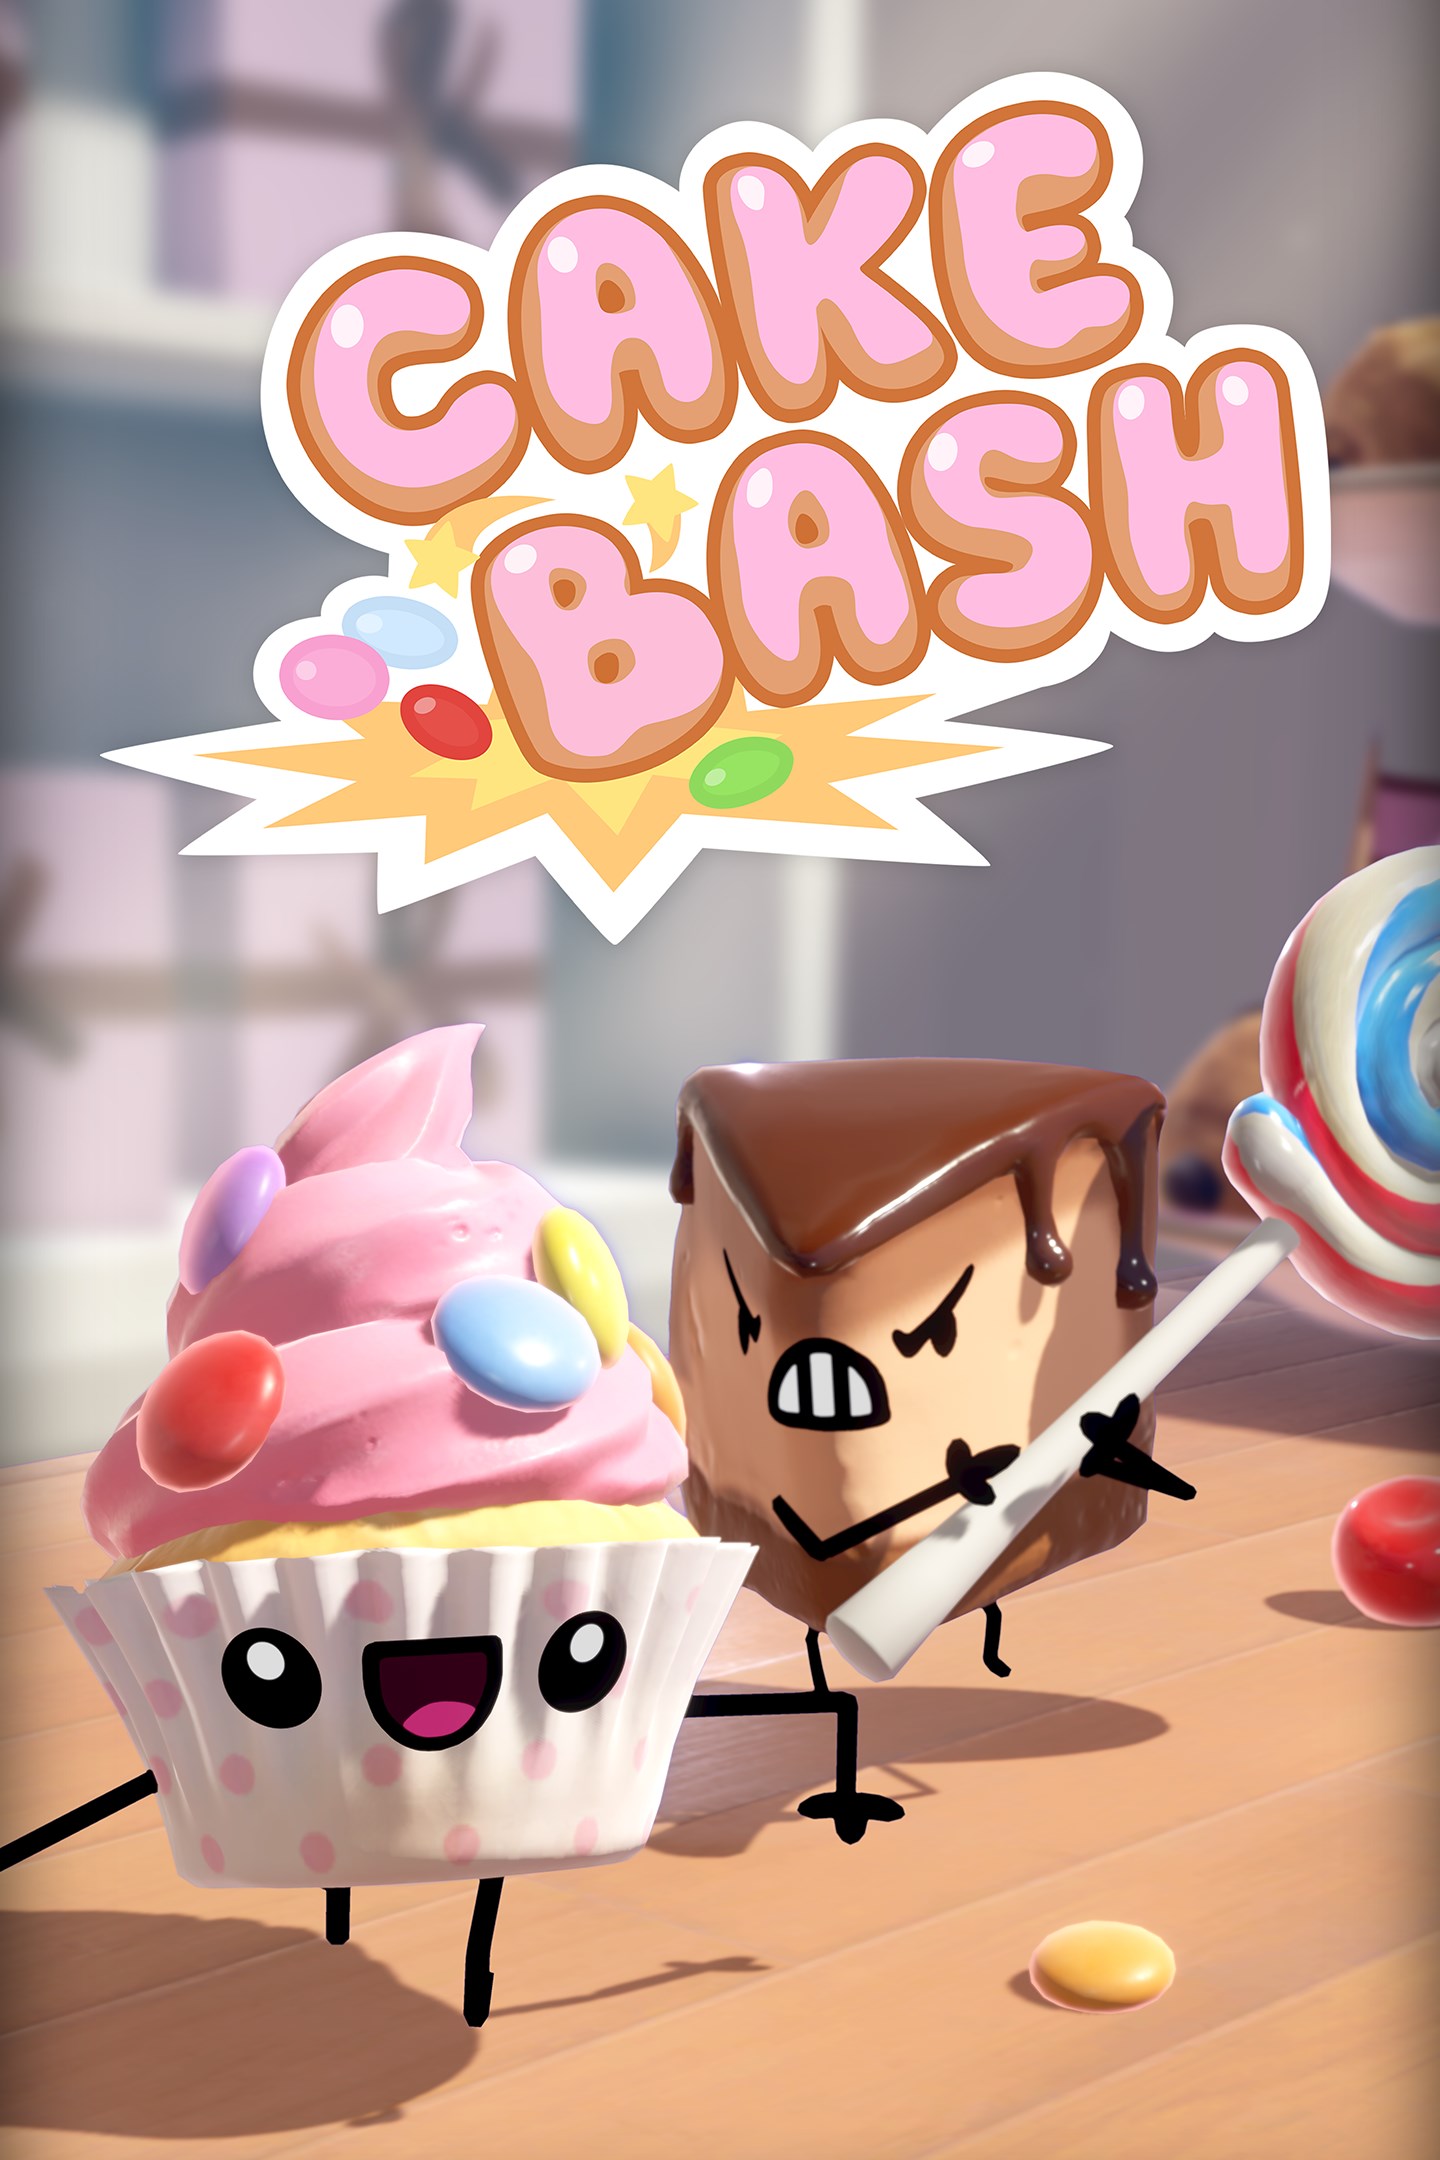 Встречайте торты из Cake Bash, которые появятся на Xbox One 15 октября